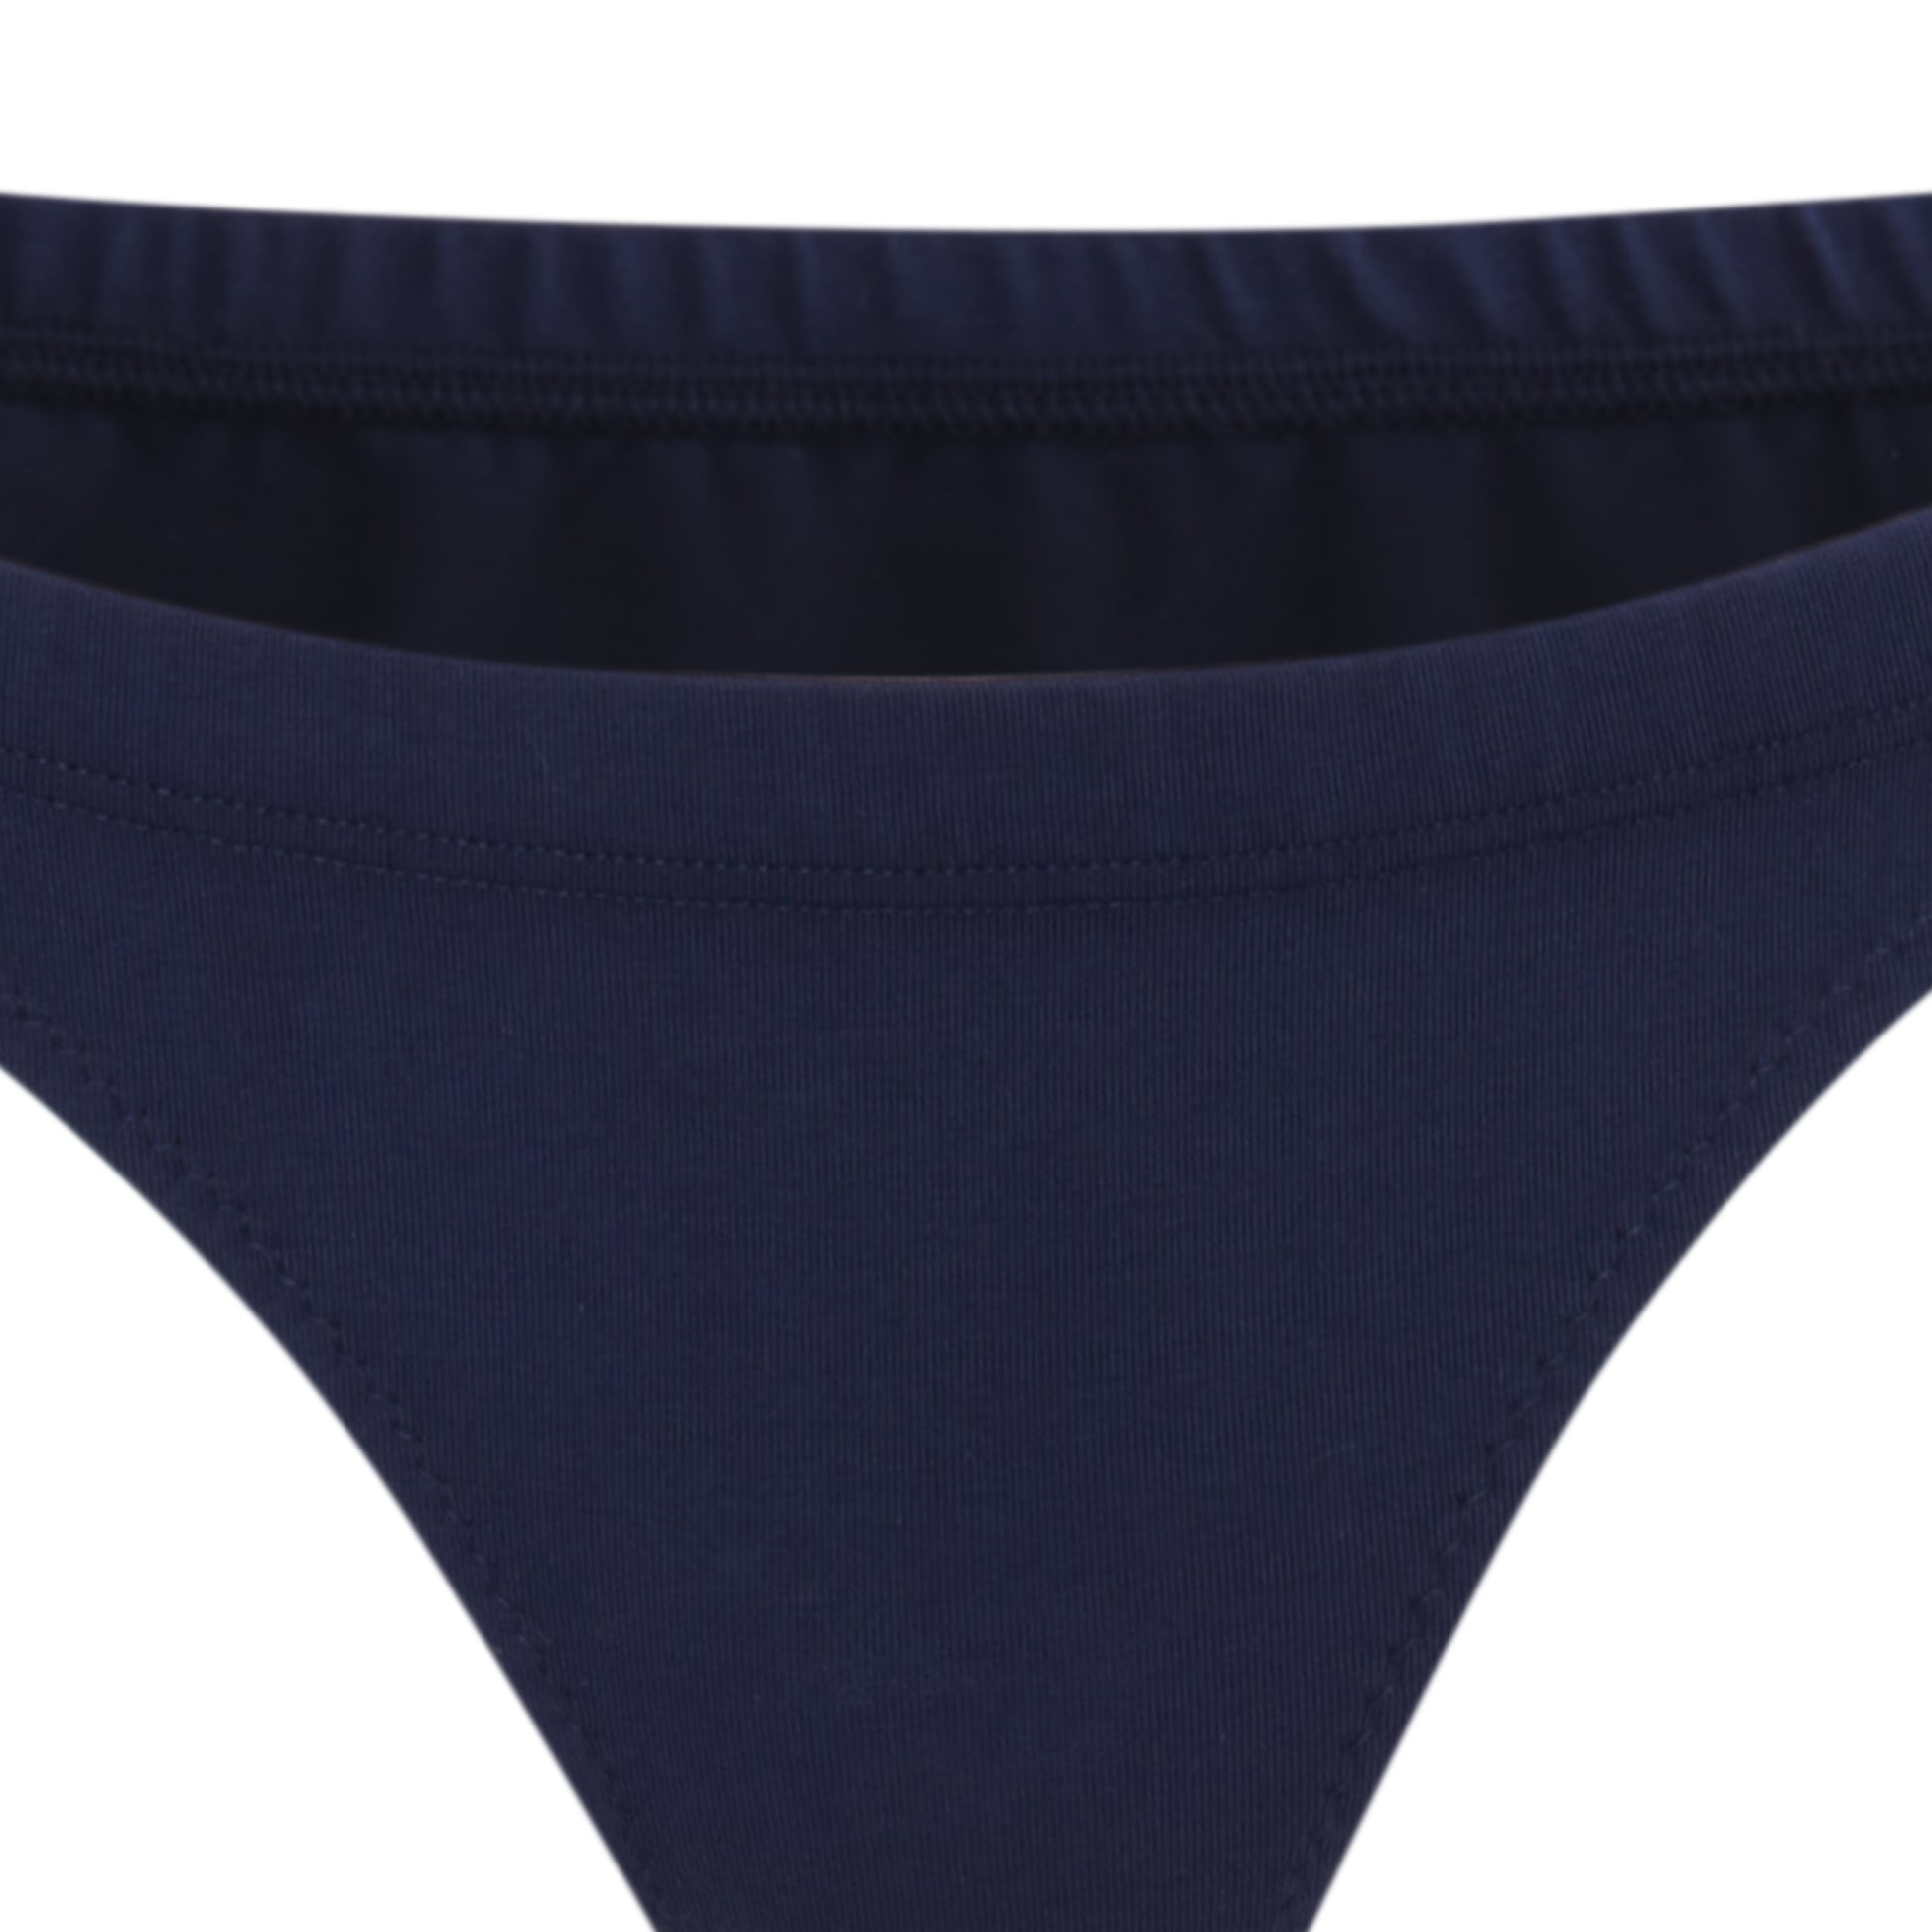 Navy blue organic cotton underwear | Women's underwear | low rise briefs | Lyzawear